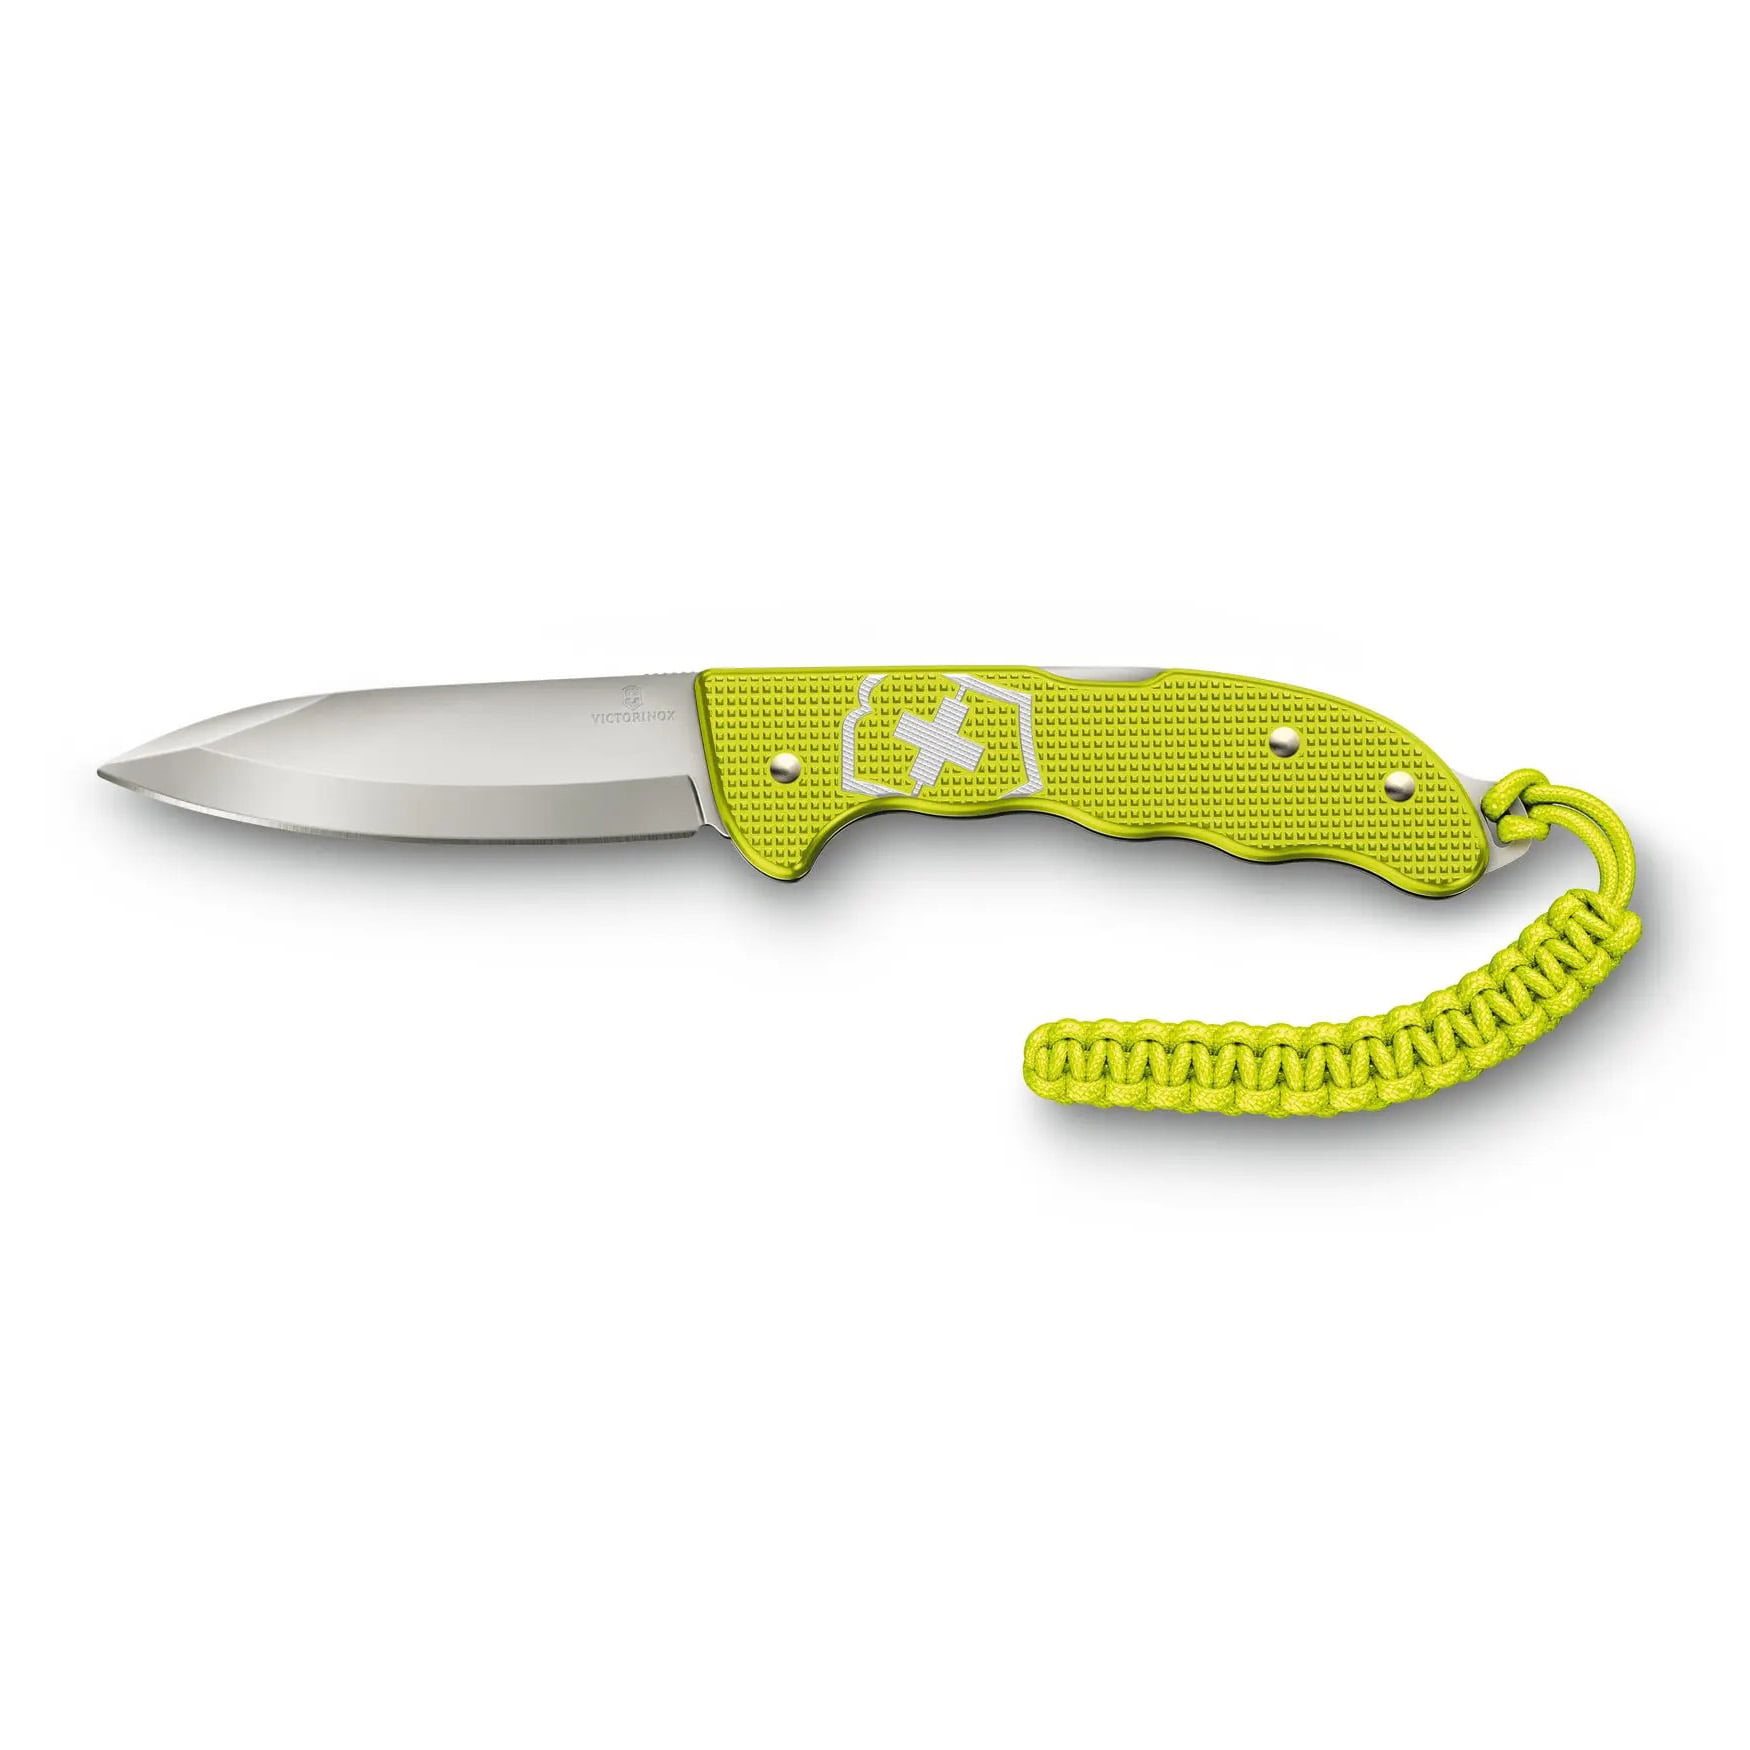 Pocket Knife HUNTER PRO Alox LIMITED EDITION 2023 VICTORINOX 0.9415.L23 L-11